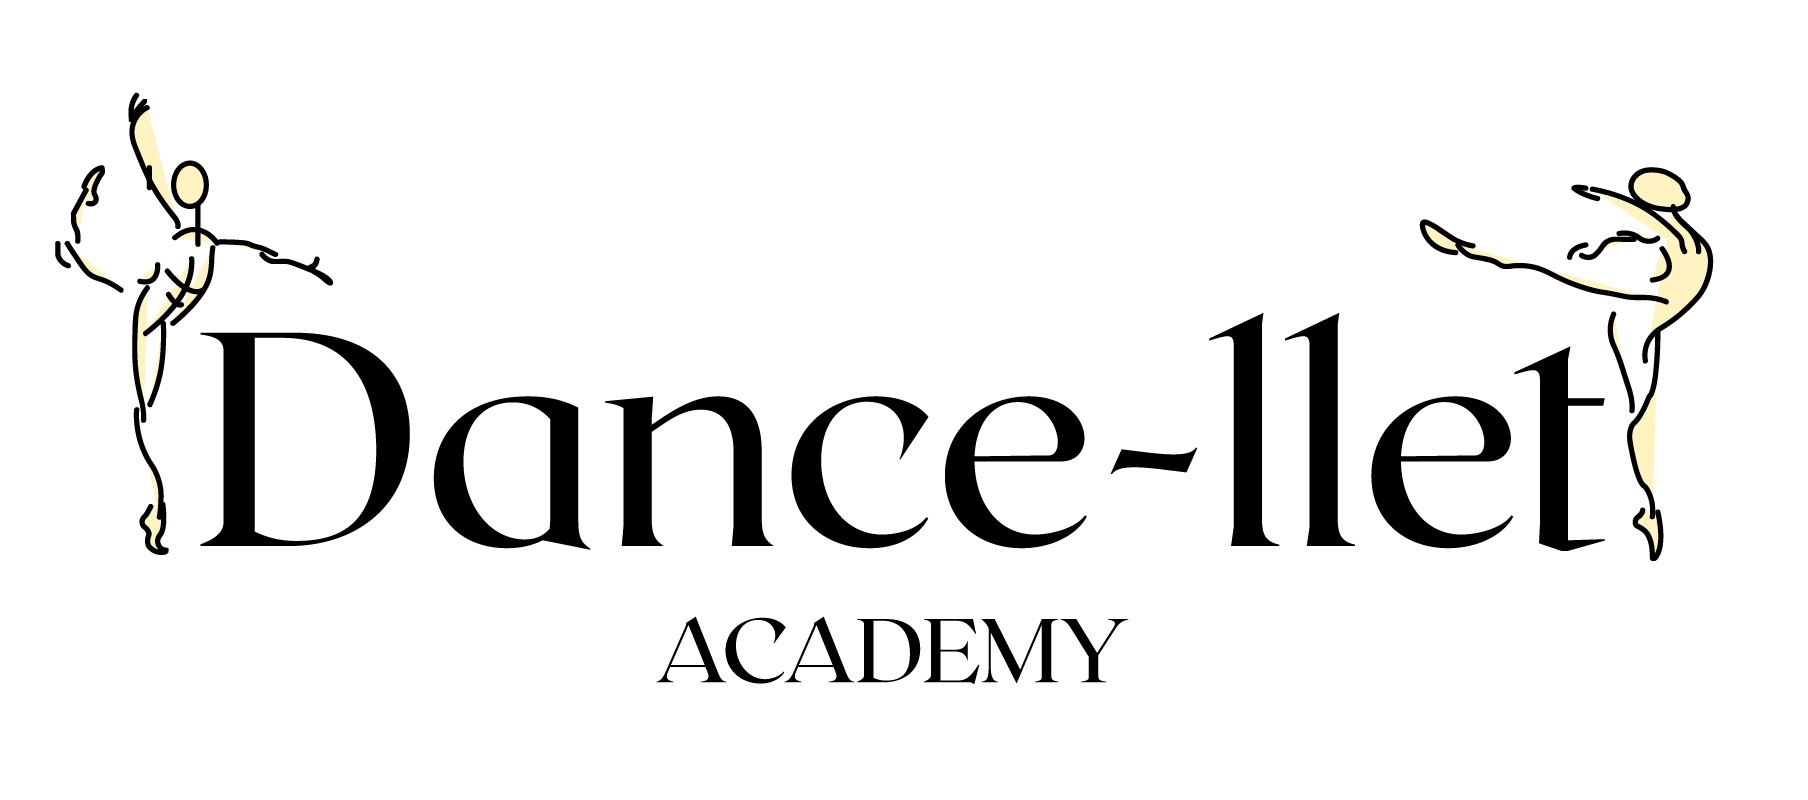 Cupon digital para paquete de 2 clases por semana durante un mes en Dance-llet Academy